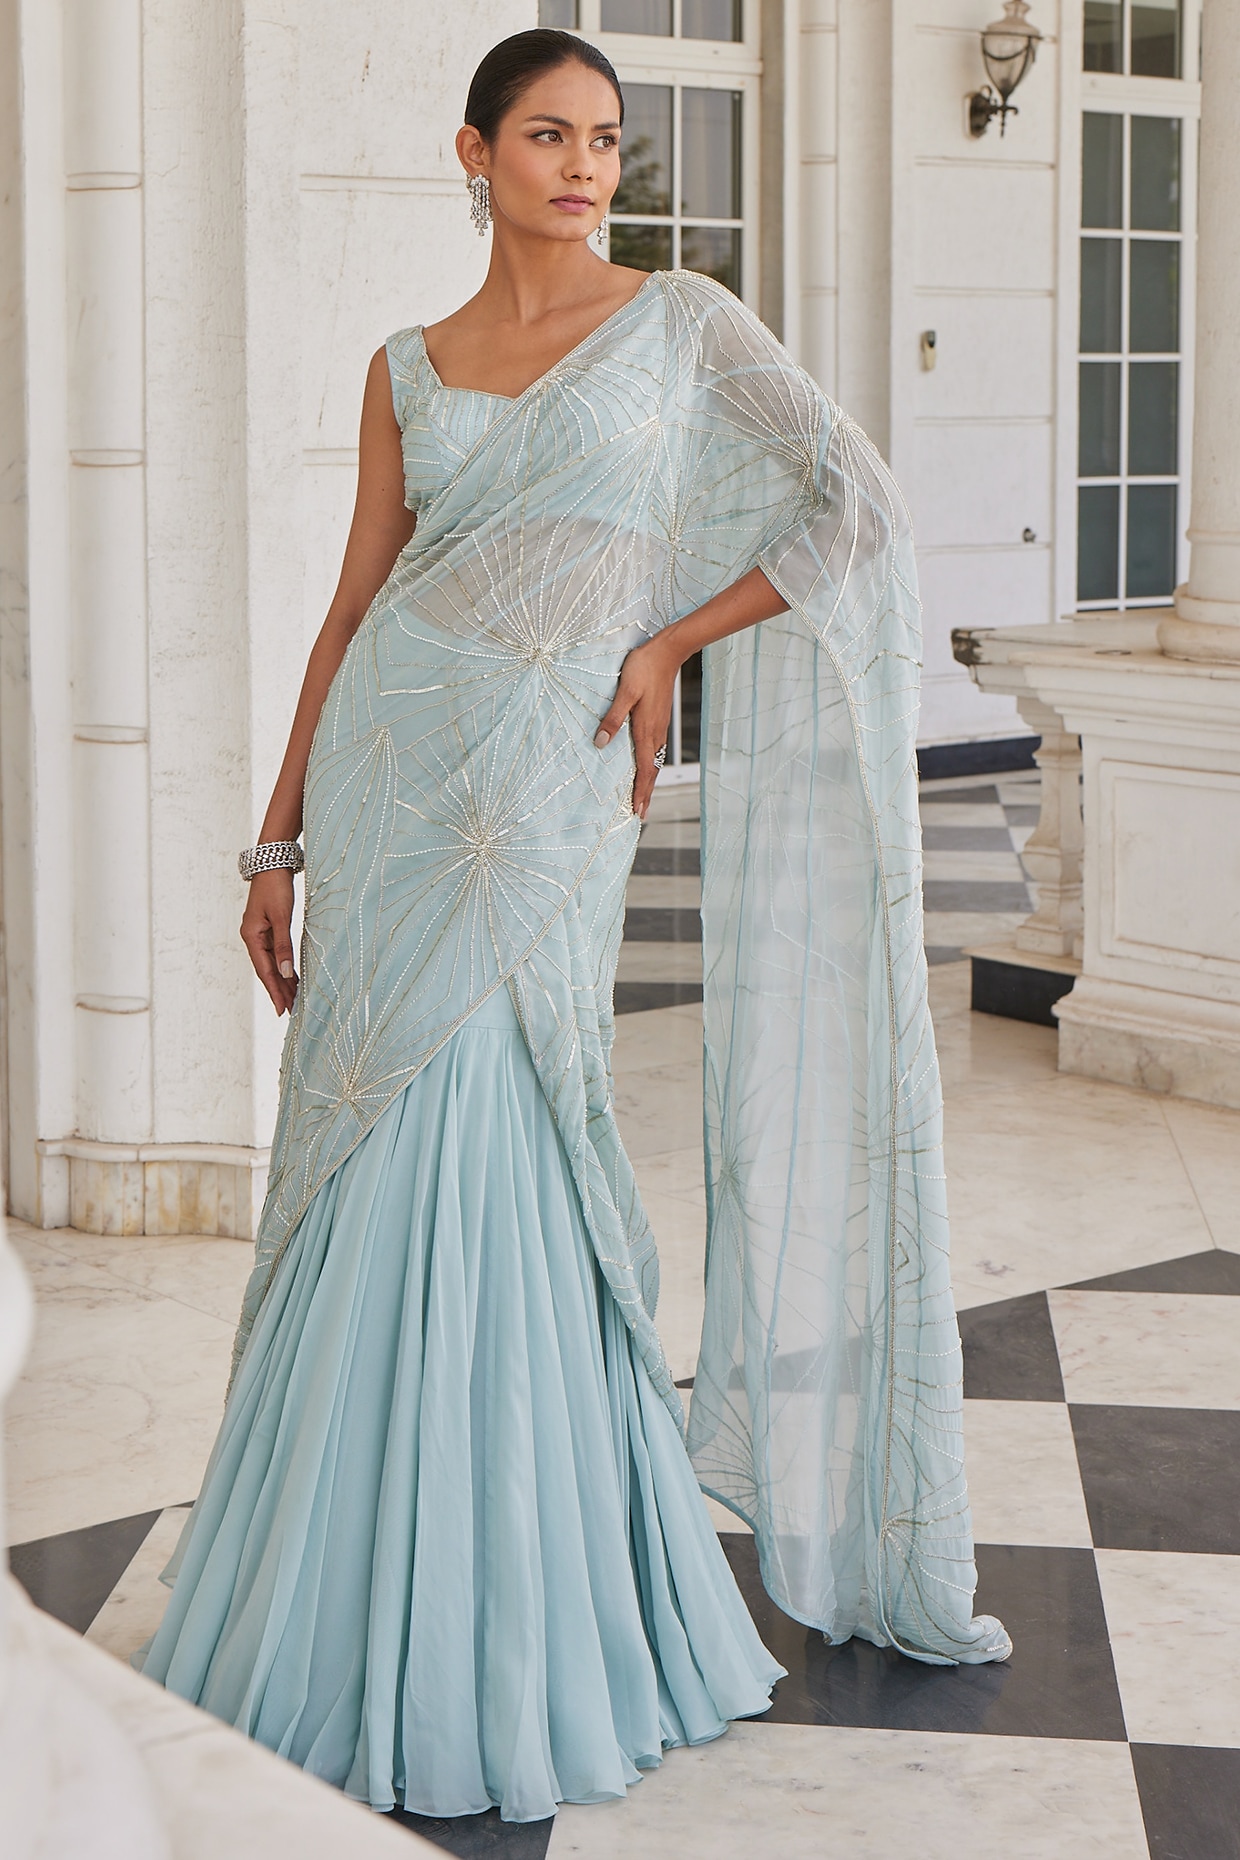 40 Elegant Half Saree Lehenga Designs For The South Indian Brides! | Lehenga  designs, Lehenga saree design, Half saree lehenga